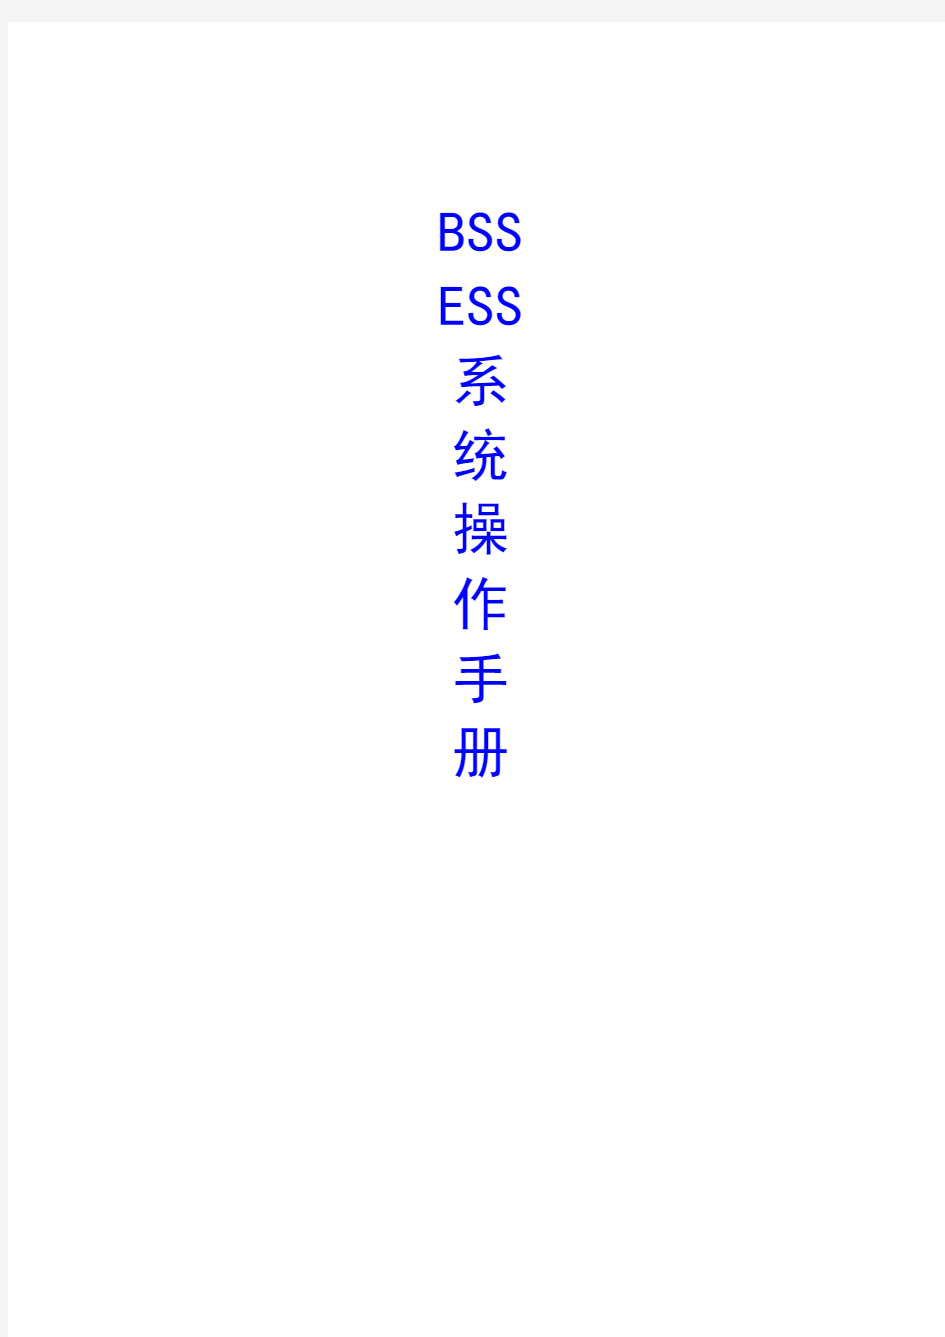 中国联通BSS.ESS系统使用手册